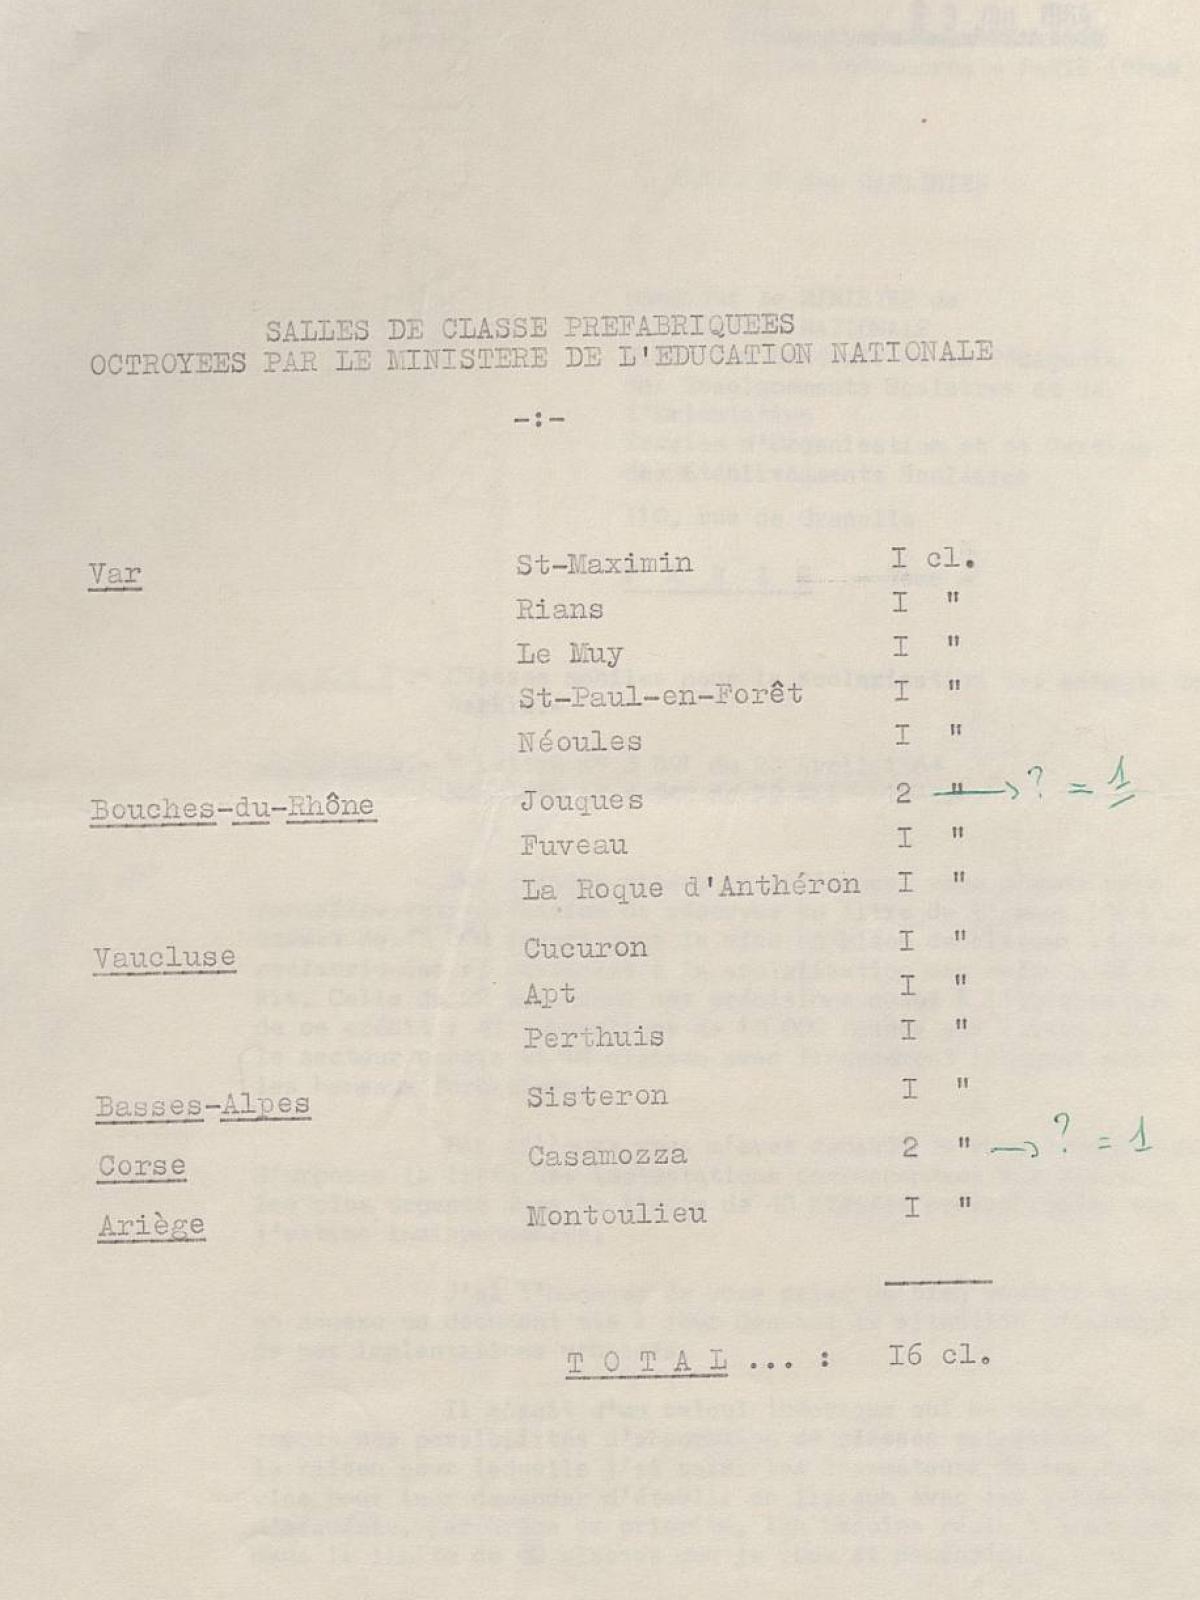 Illustration 18 : liste des salles de classe octroyées par le ministère de l’Éducation nationale au 23 juillet 1964 (Archives nationales, 1977074/3)